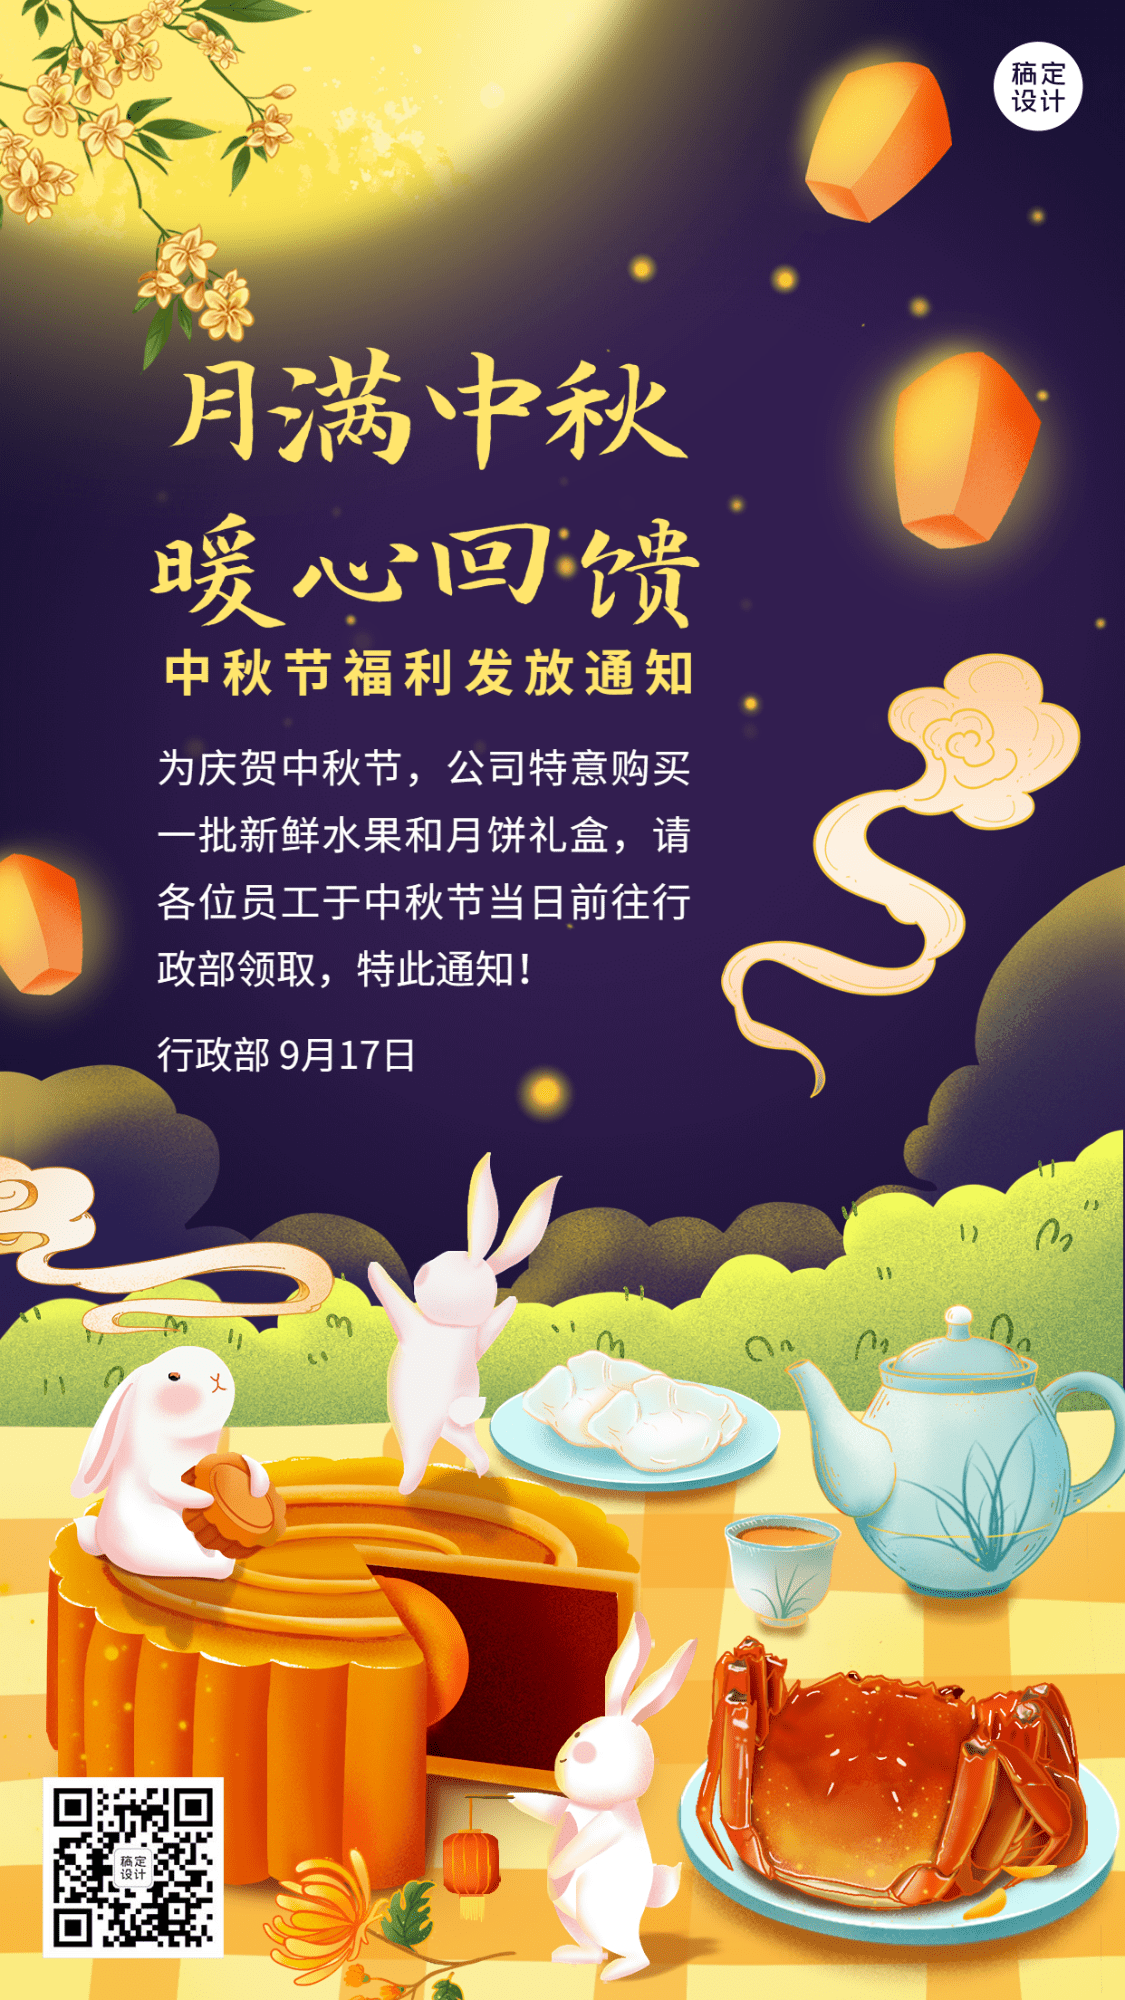 中秋节企业员工福利通知手绘插画手机海报